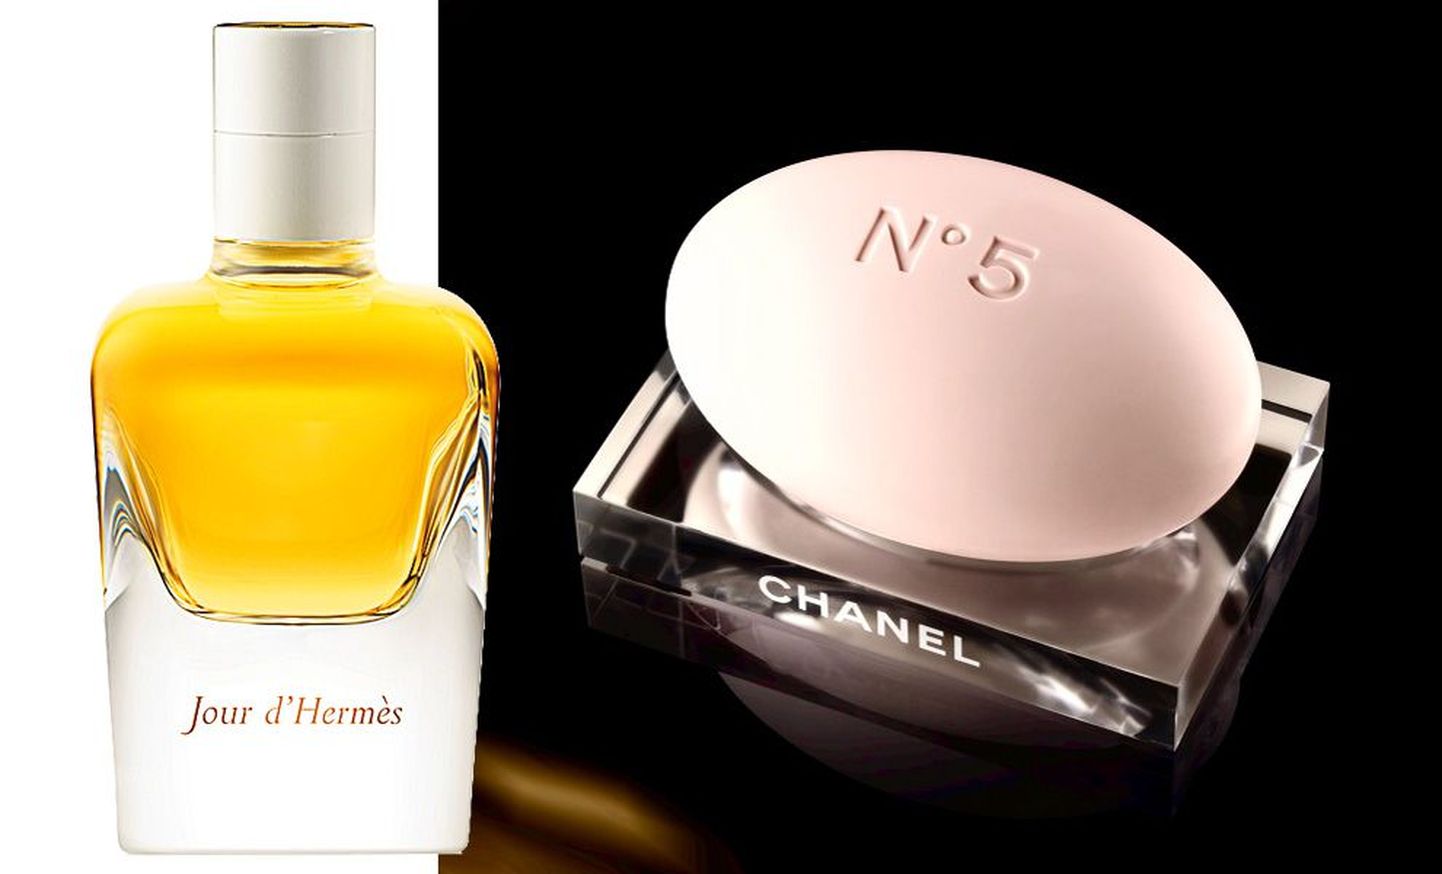 Hermés Jour D’Hermés parfüüm ja Chanel Nr 5 seep.